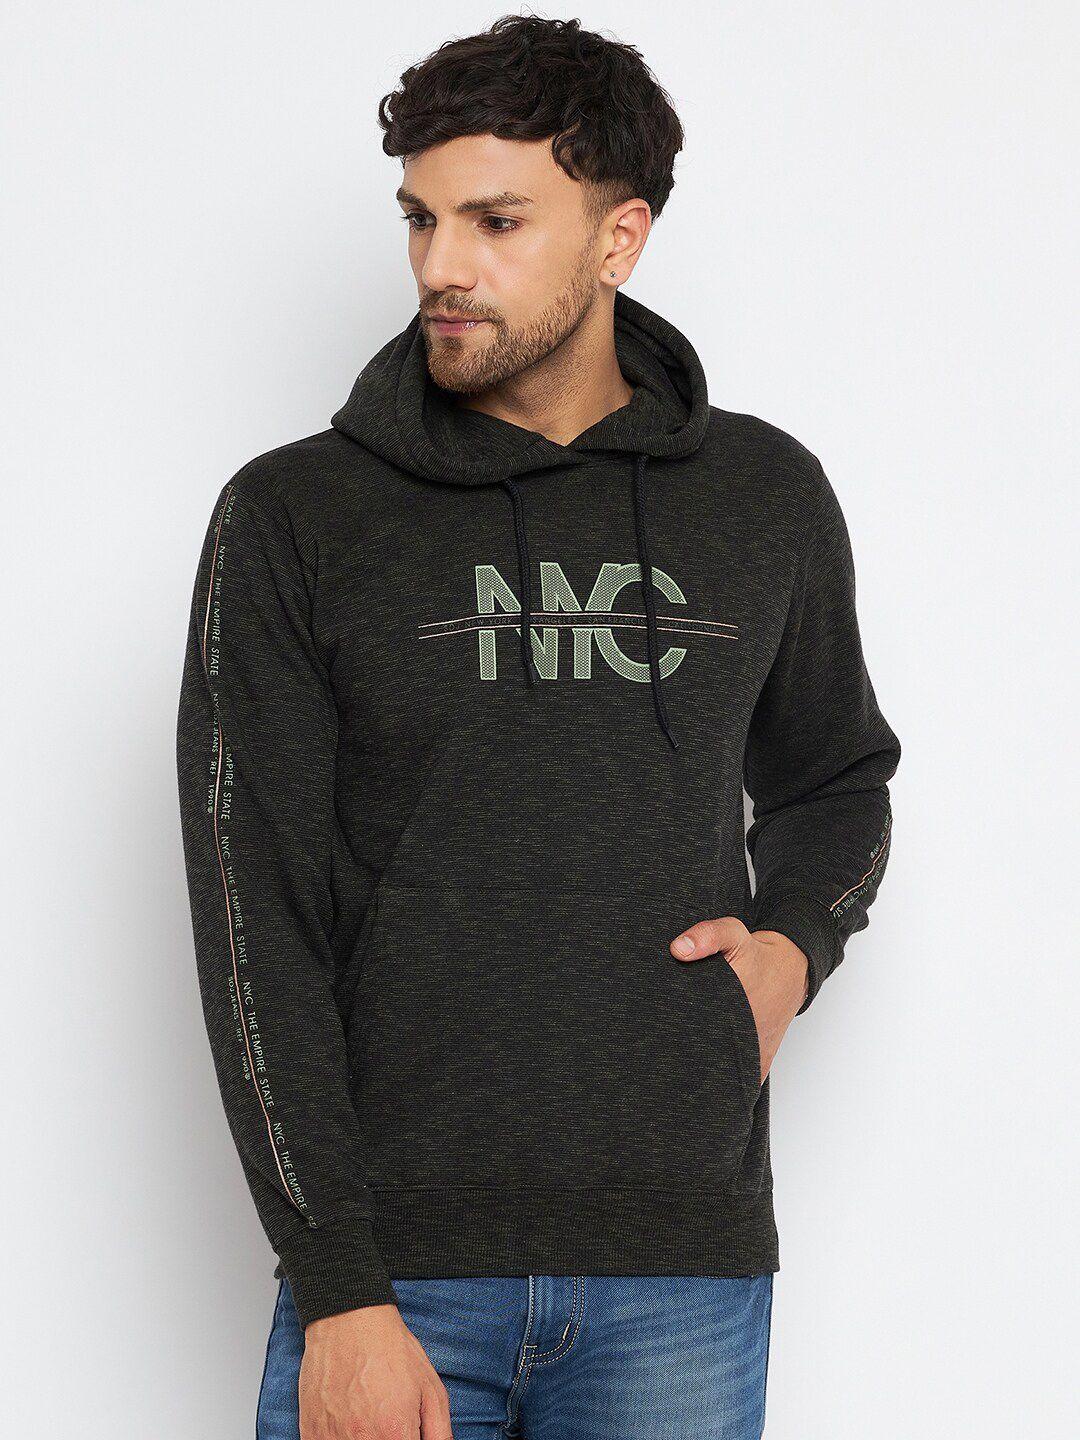 duke-typography-printed-hooded-fleece-sweatshirt